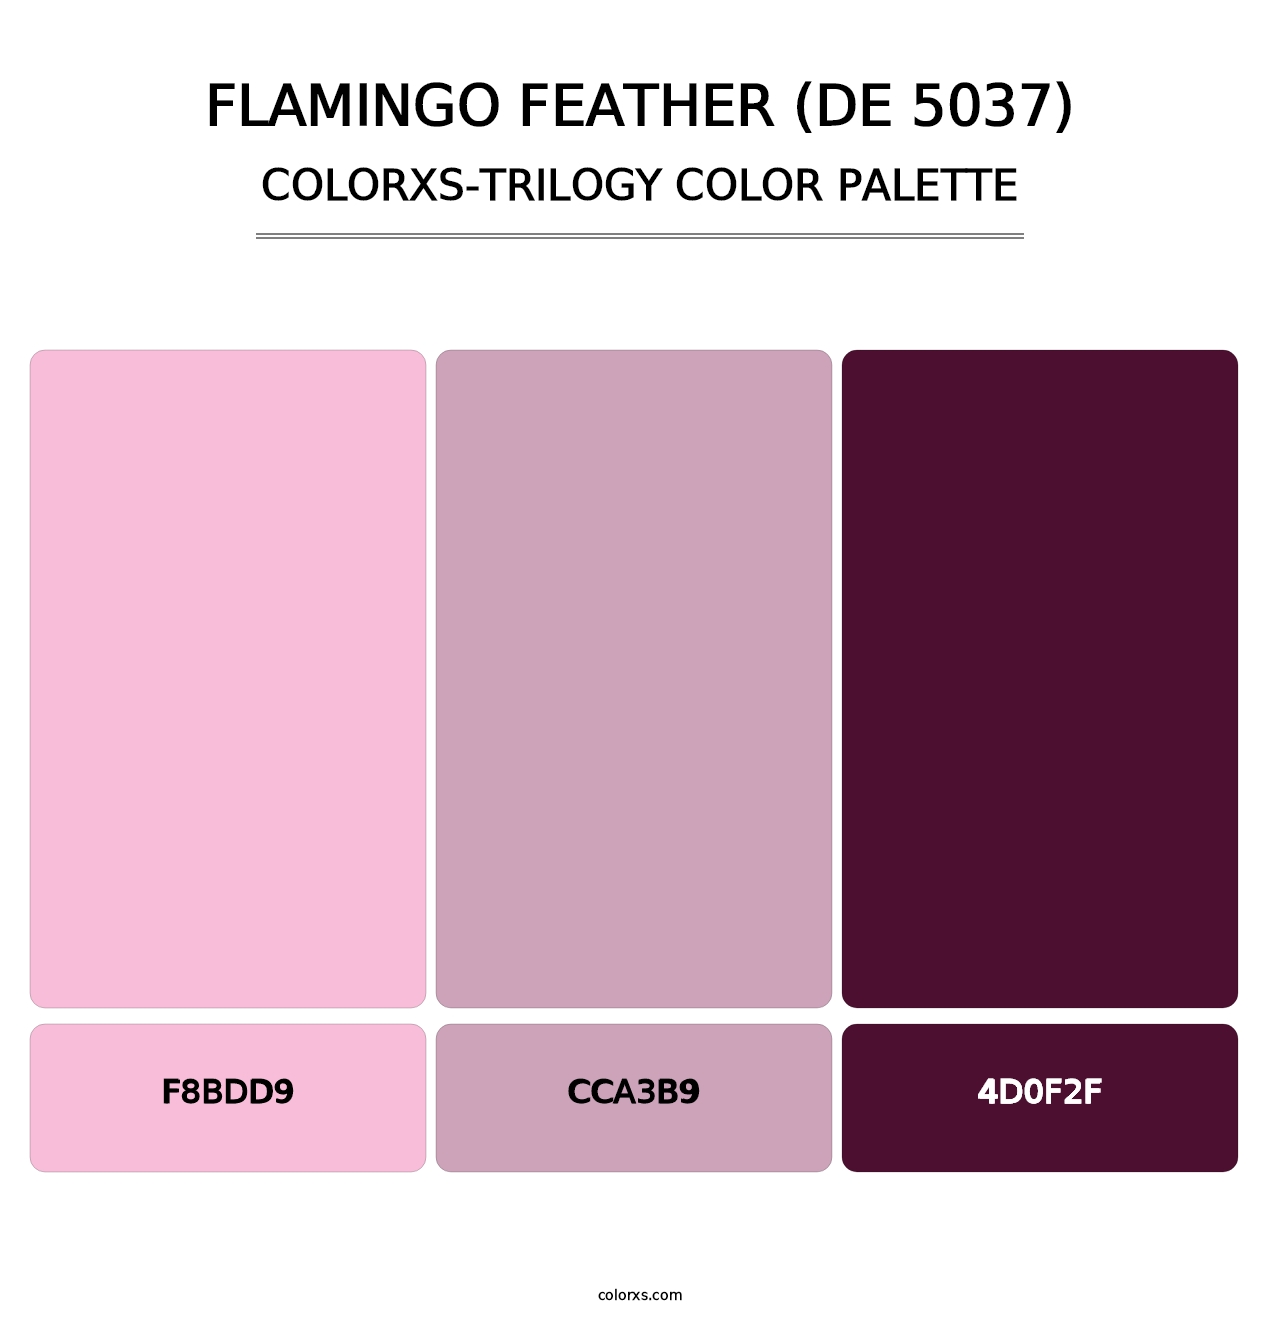 Flamingo Feather (DE 5037) - Colorxs Trilogy Palette